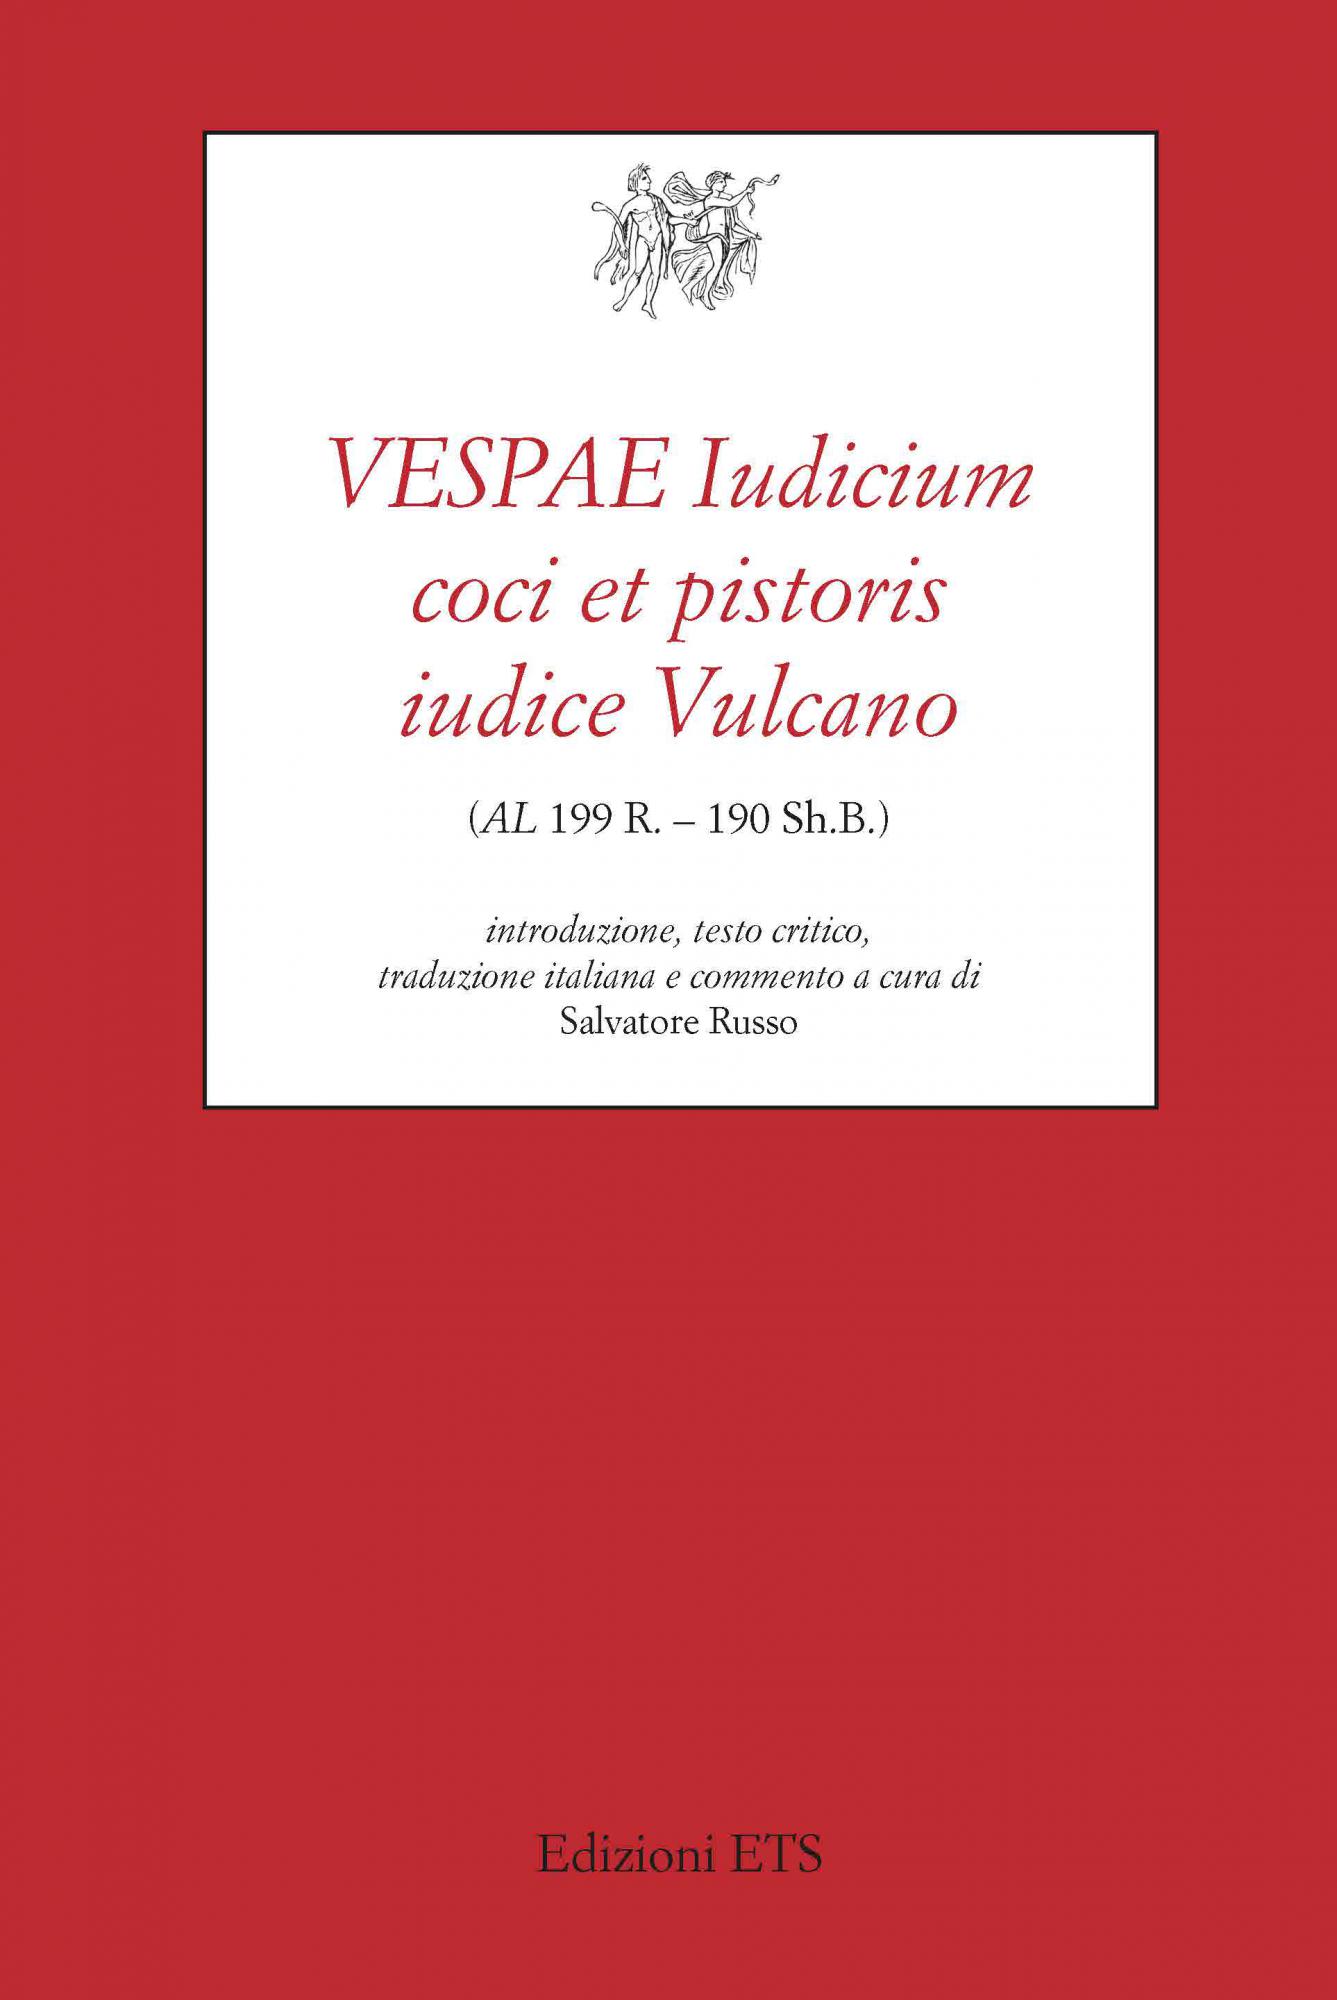 VESPAE Iudicium coci et pistoris iudice Vulcano (AL 199 R. – 190 Sh.B.) 